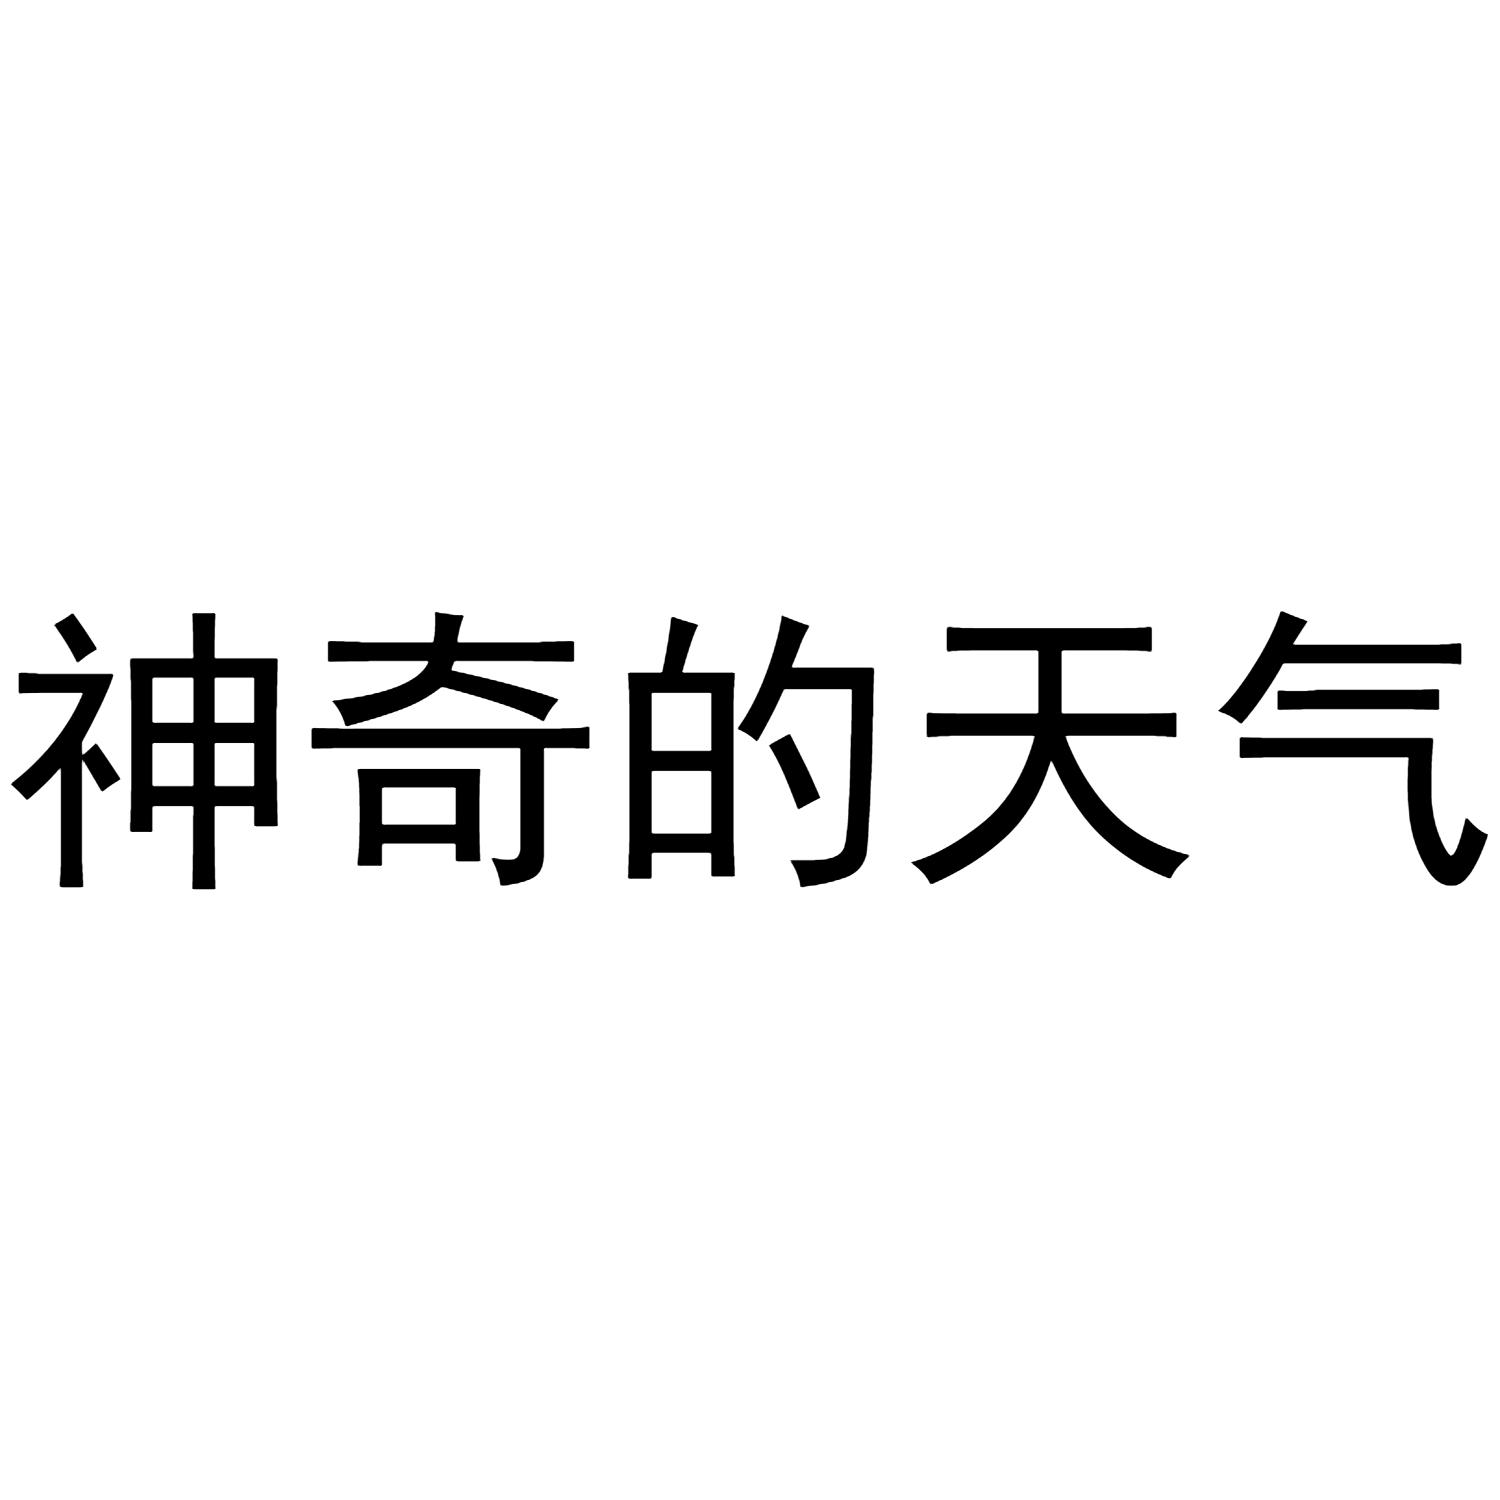 商标文字神奇的天气商标注册号 49659195,商标申请人杭州在座文化创意